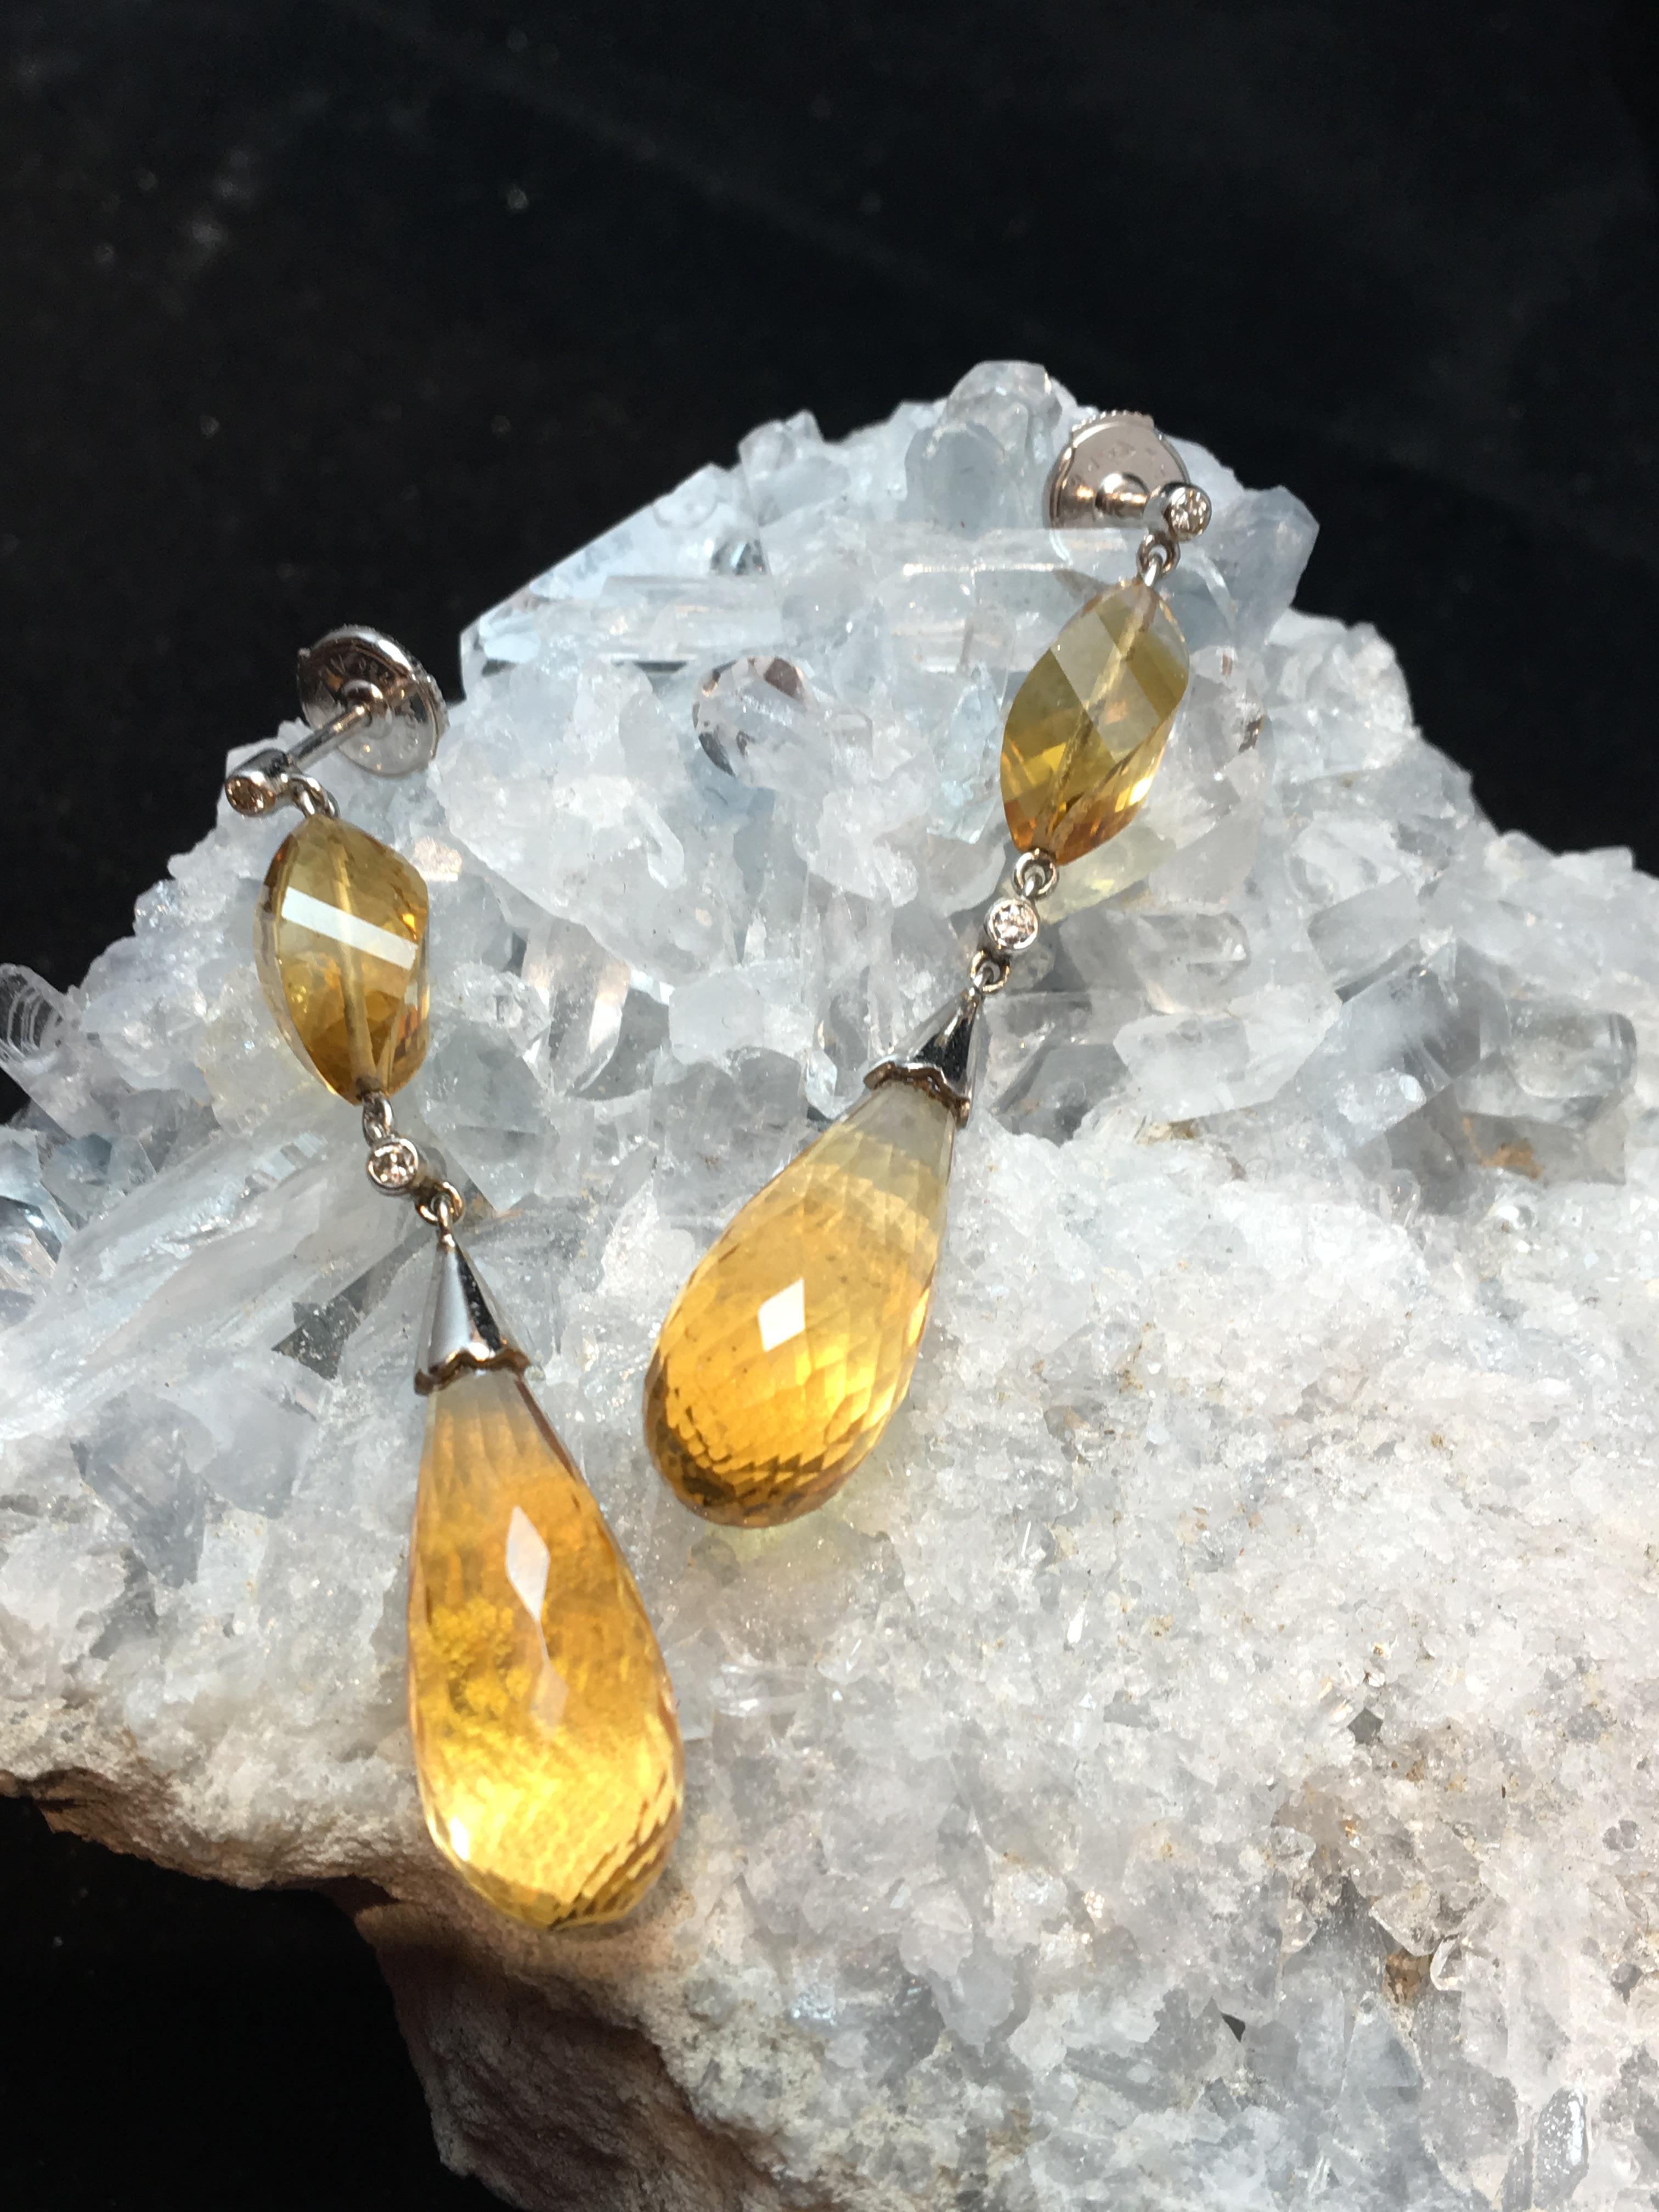 Ohrringe aus 18-karätigem Gold, besetzt mit Citrin im Briolettschliff und 4 kleinen Brillanten

Alpa sicheres Verschlusssystem

Erbsen insgesamt: 8.58gr

Länge: 4.5 cm